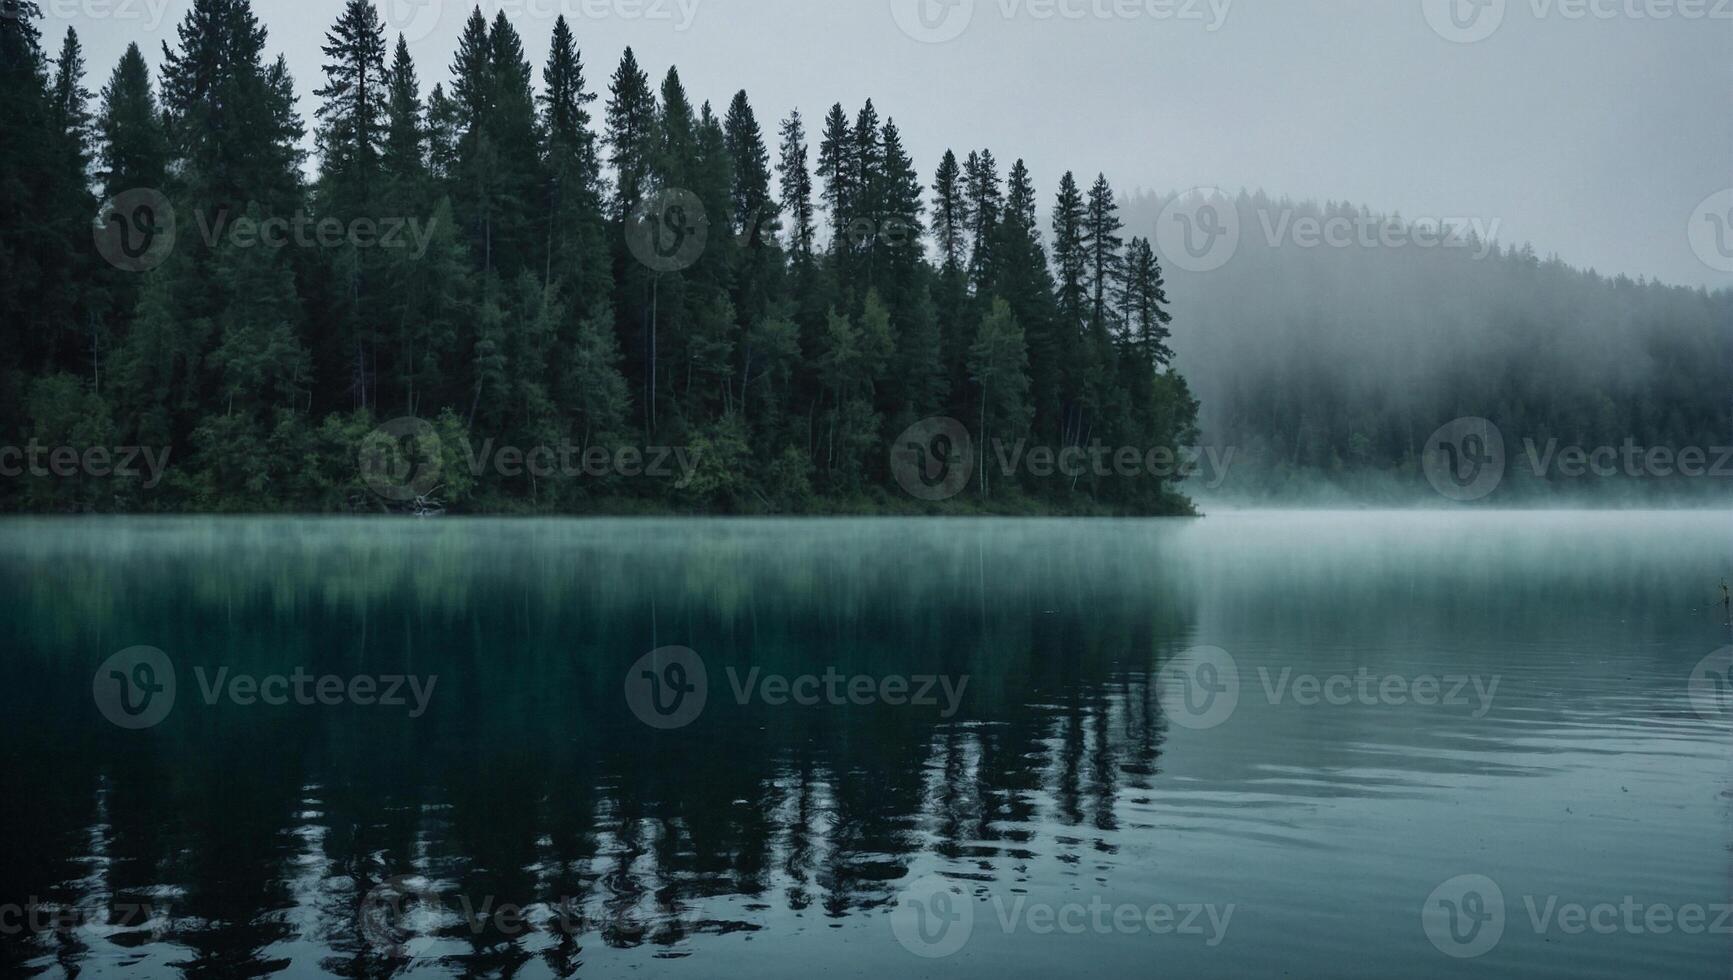 kristal Doorzichtig meer omhuld in mist omringd door torenhoog bomen dat bereiken omhoog naar de lucht foto